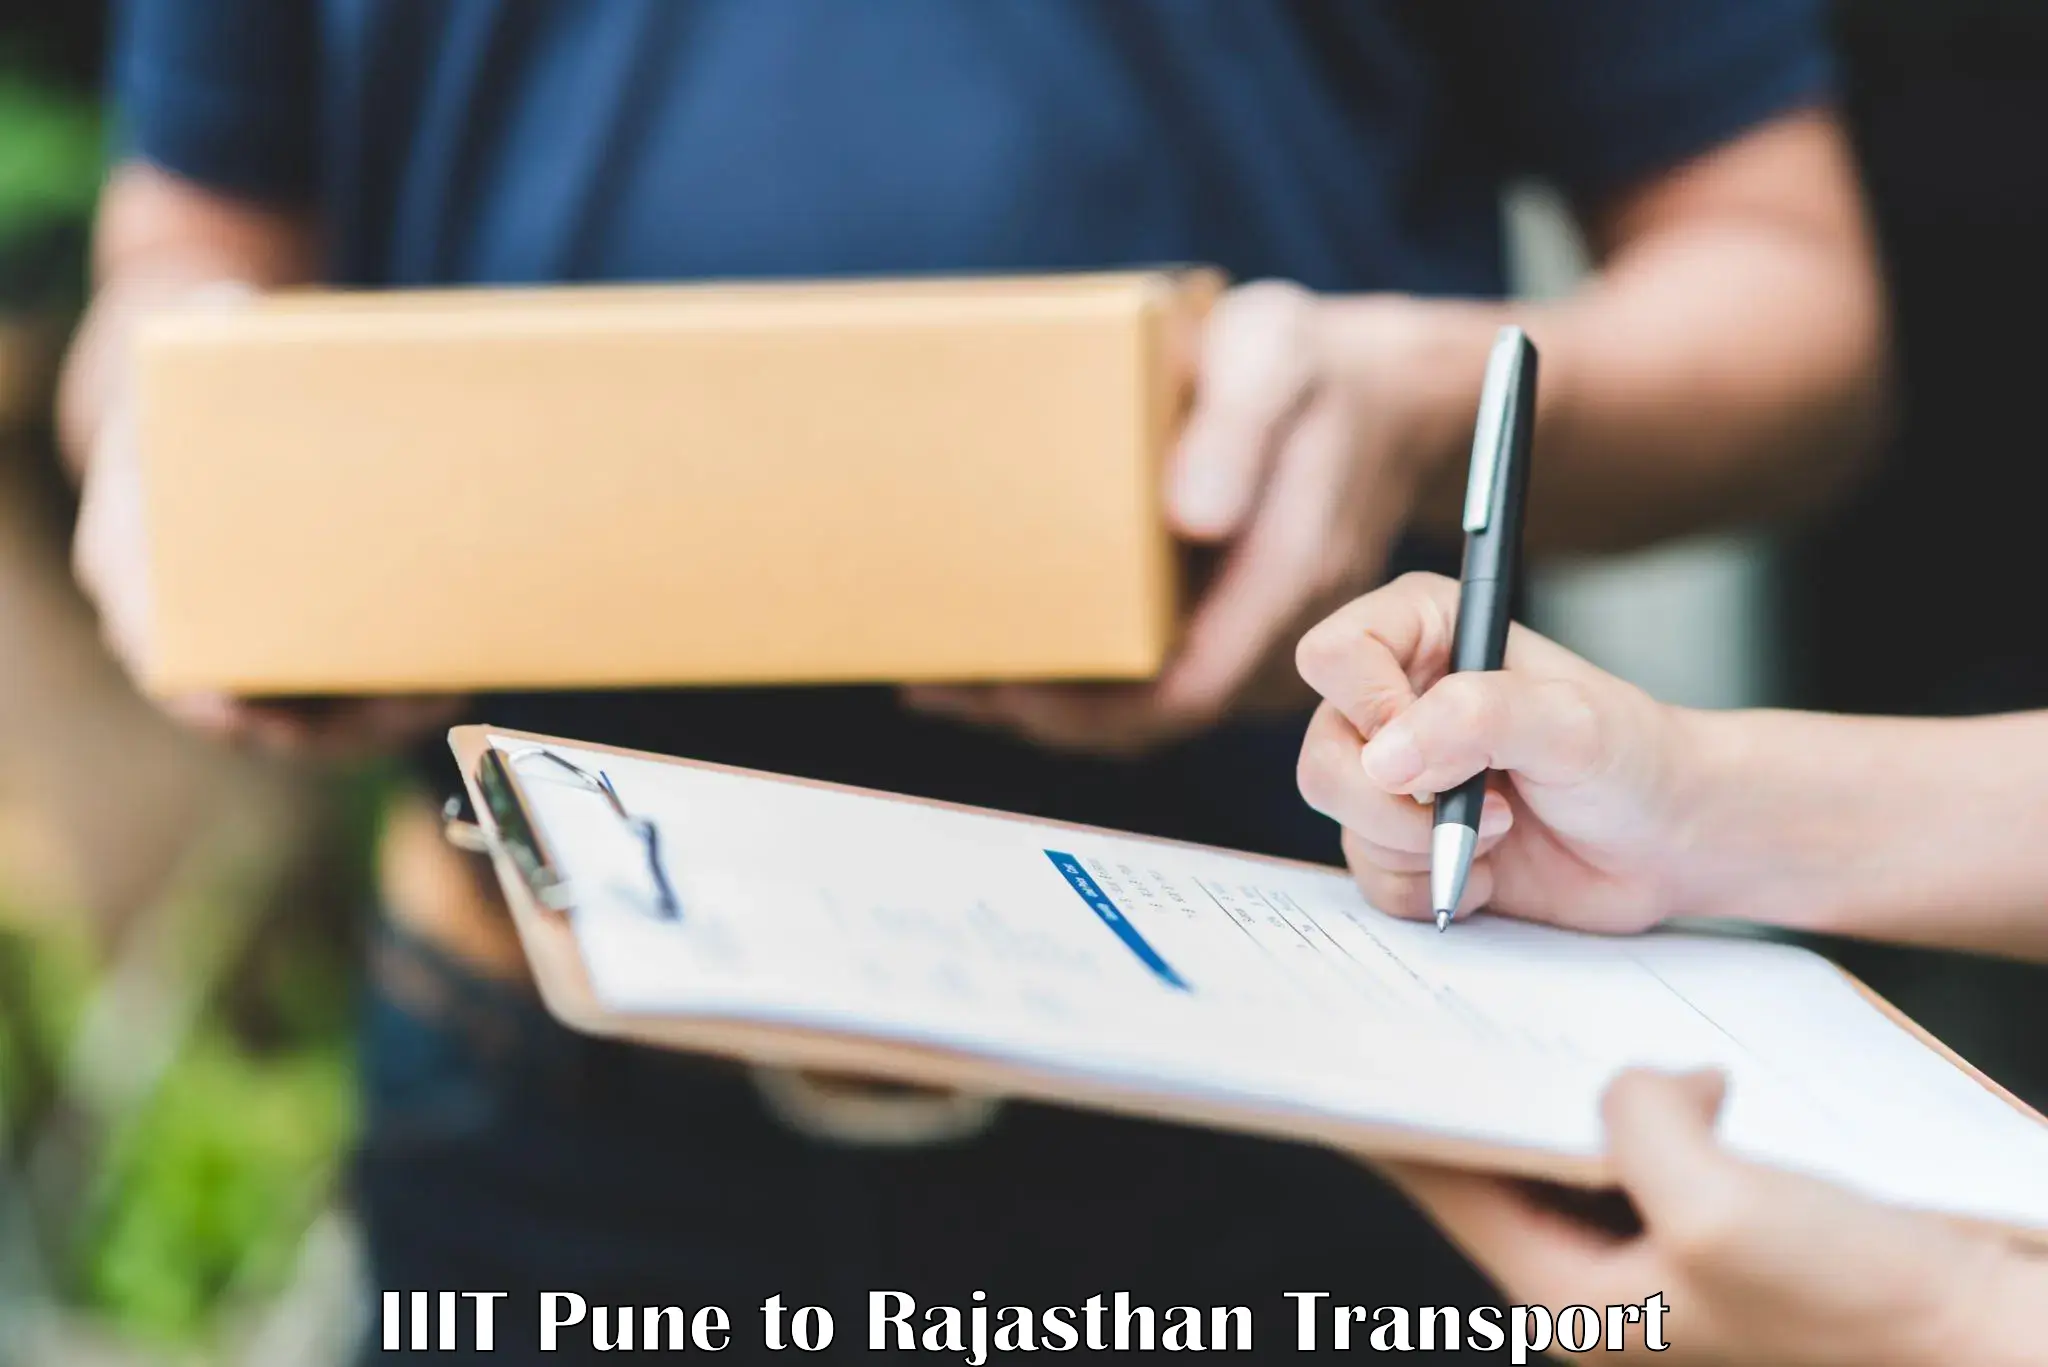 Nearest transport service IIIT Pune to Sumerpur